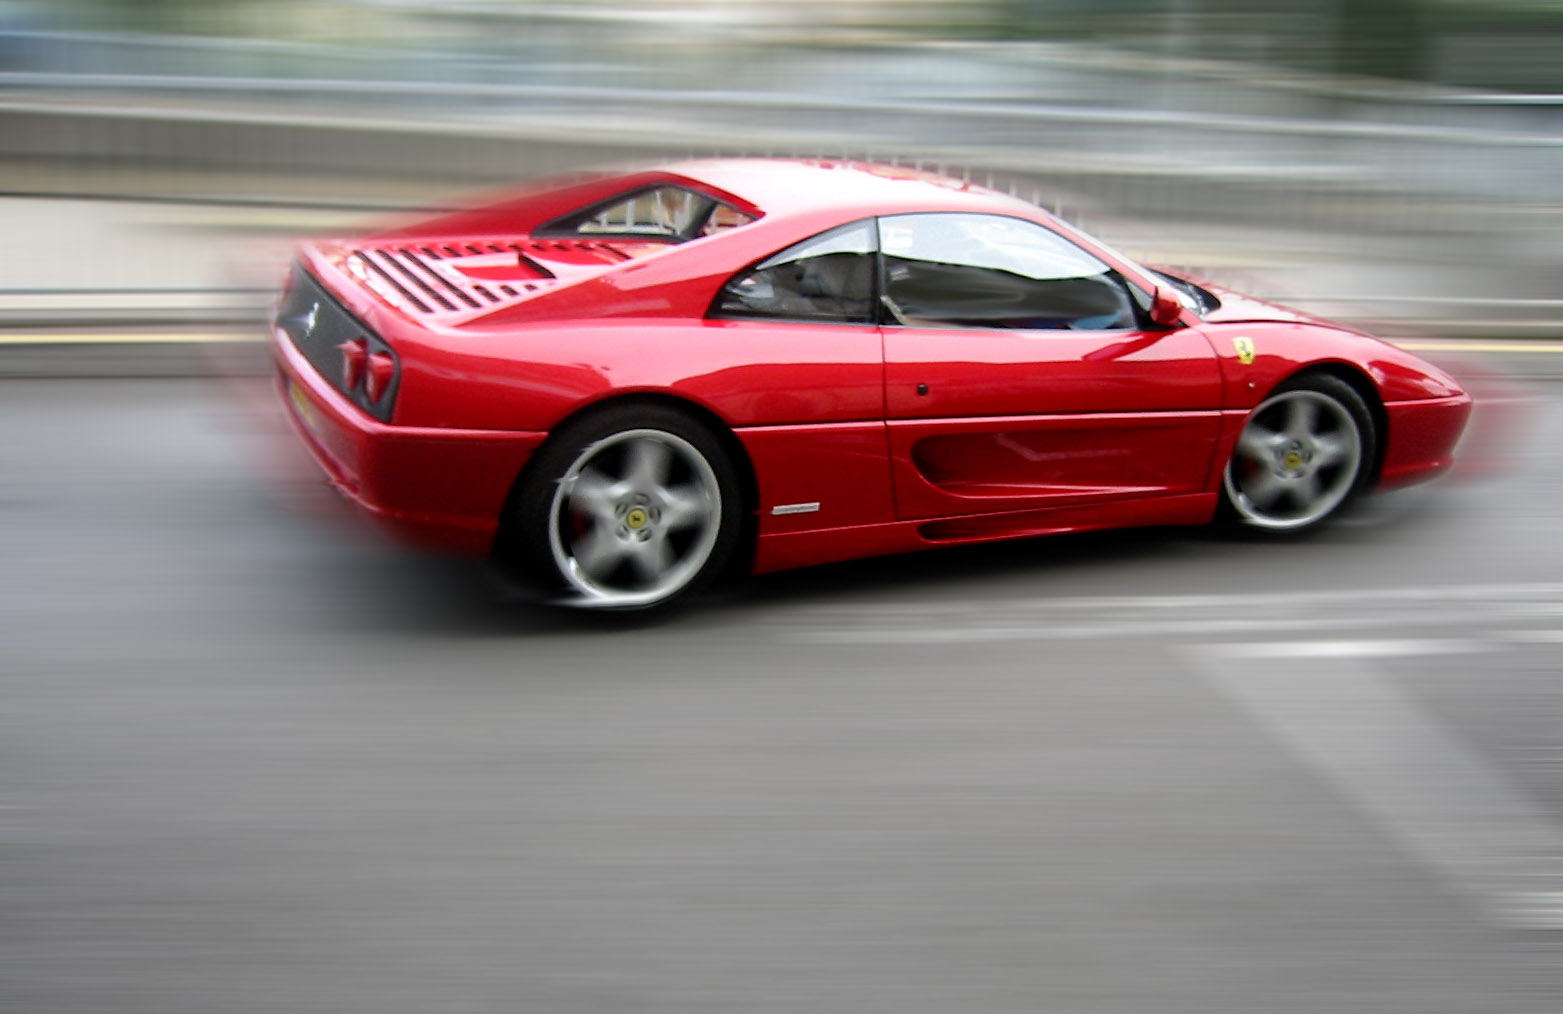 la suite d'images - Page 15 Ferrari_355_red_speed_copie